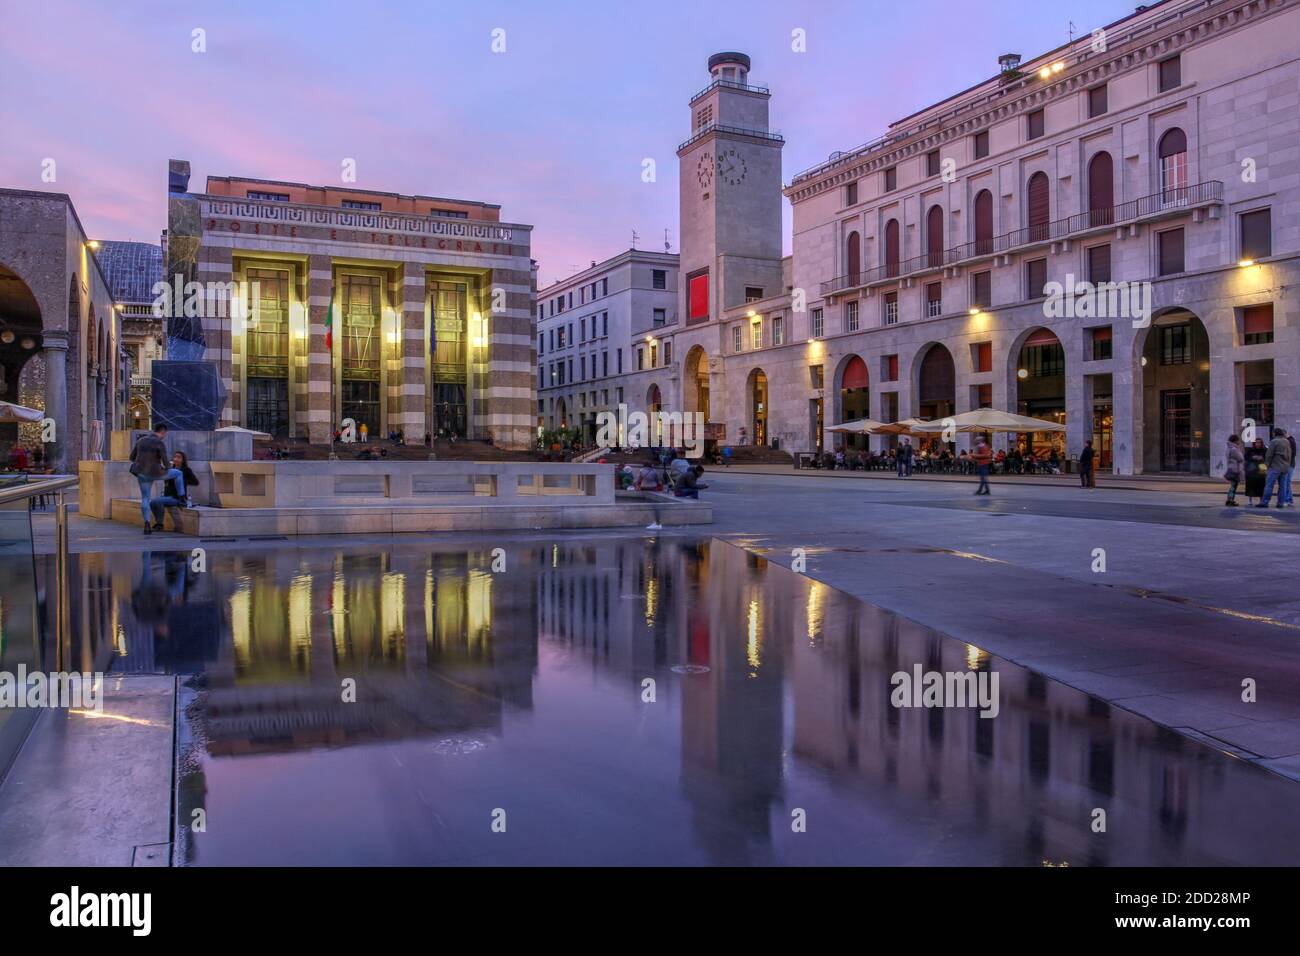 Twilight scene in Piazza della Vittoria (Victory Square) in Brescia, Italy. Stock Photo